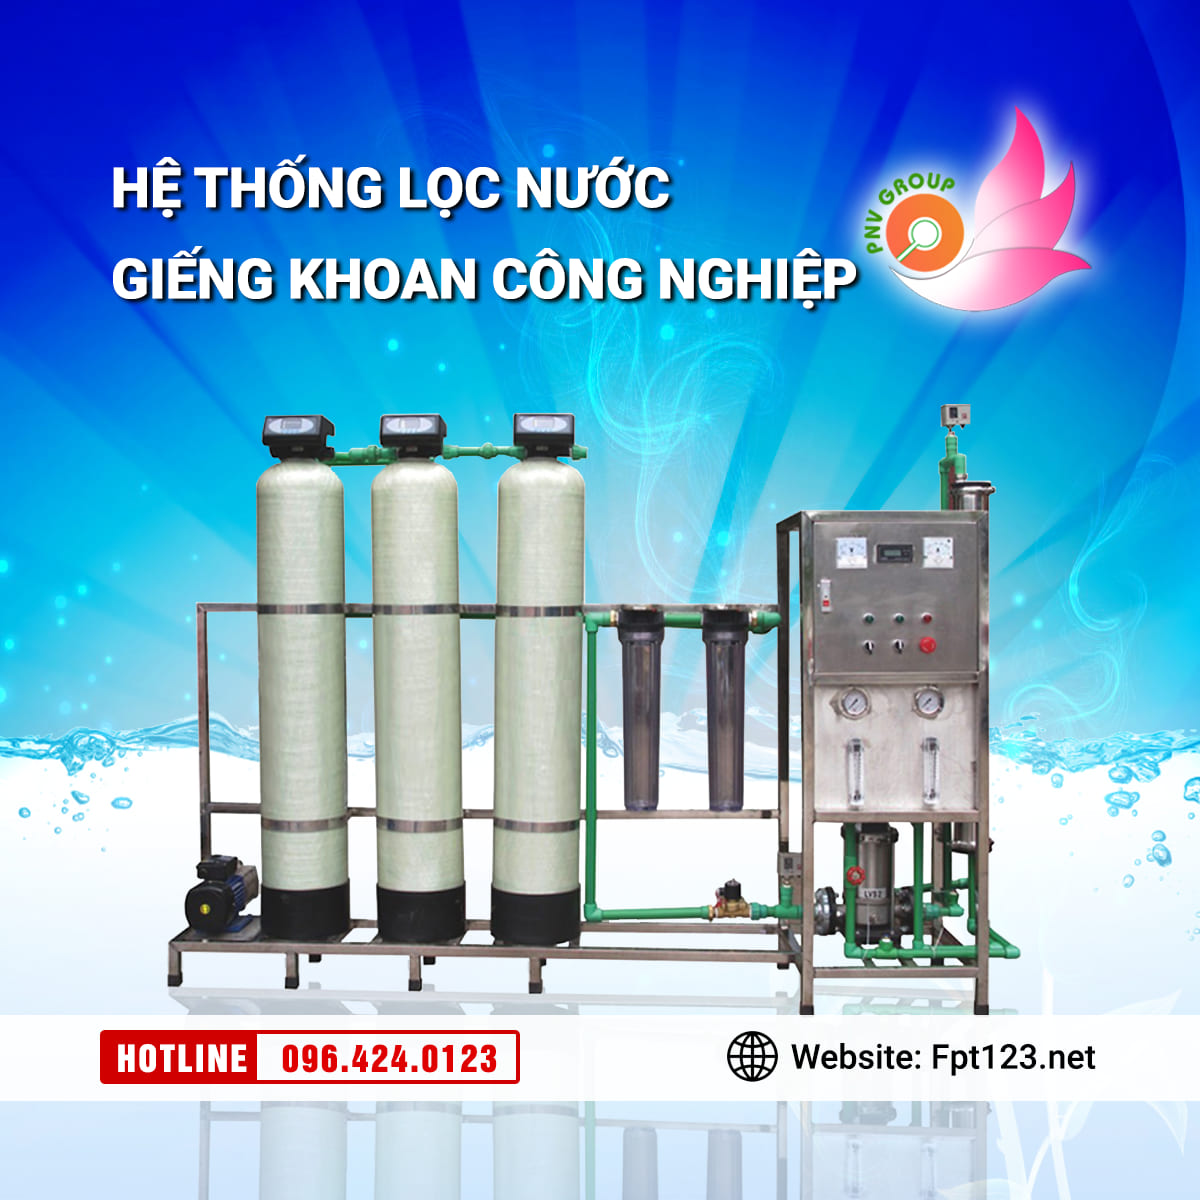 Lắp đặt hệ thống lọc nước công nghiệp tại Hà Nội